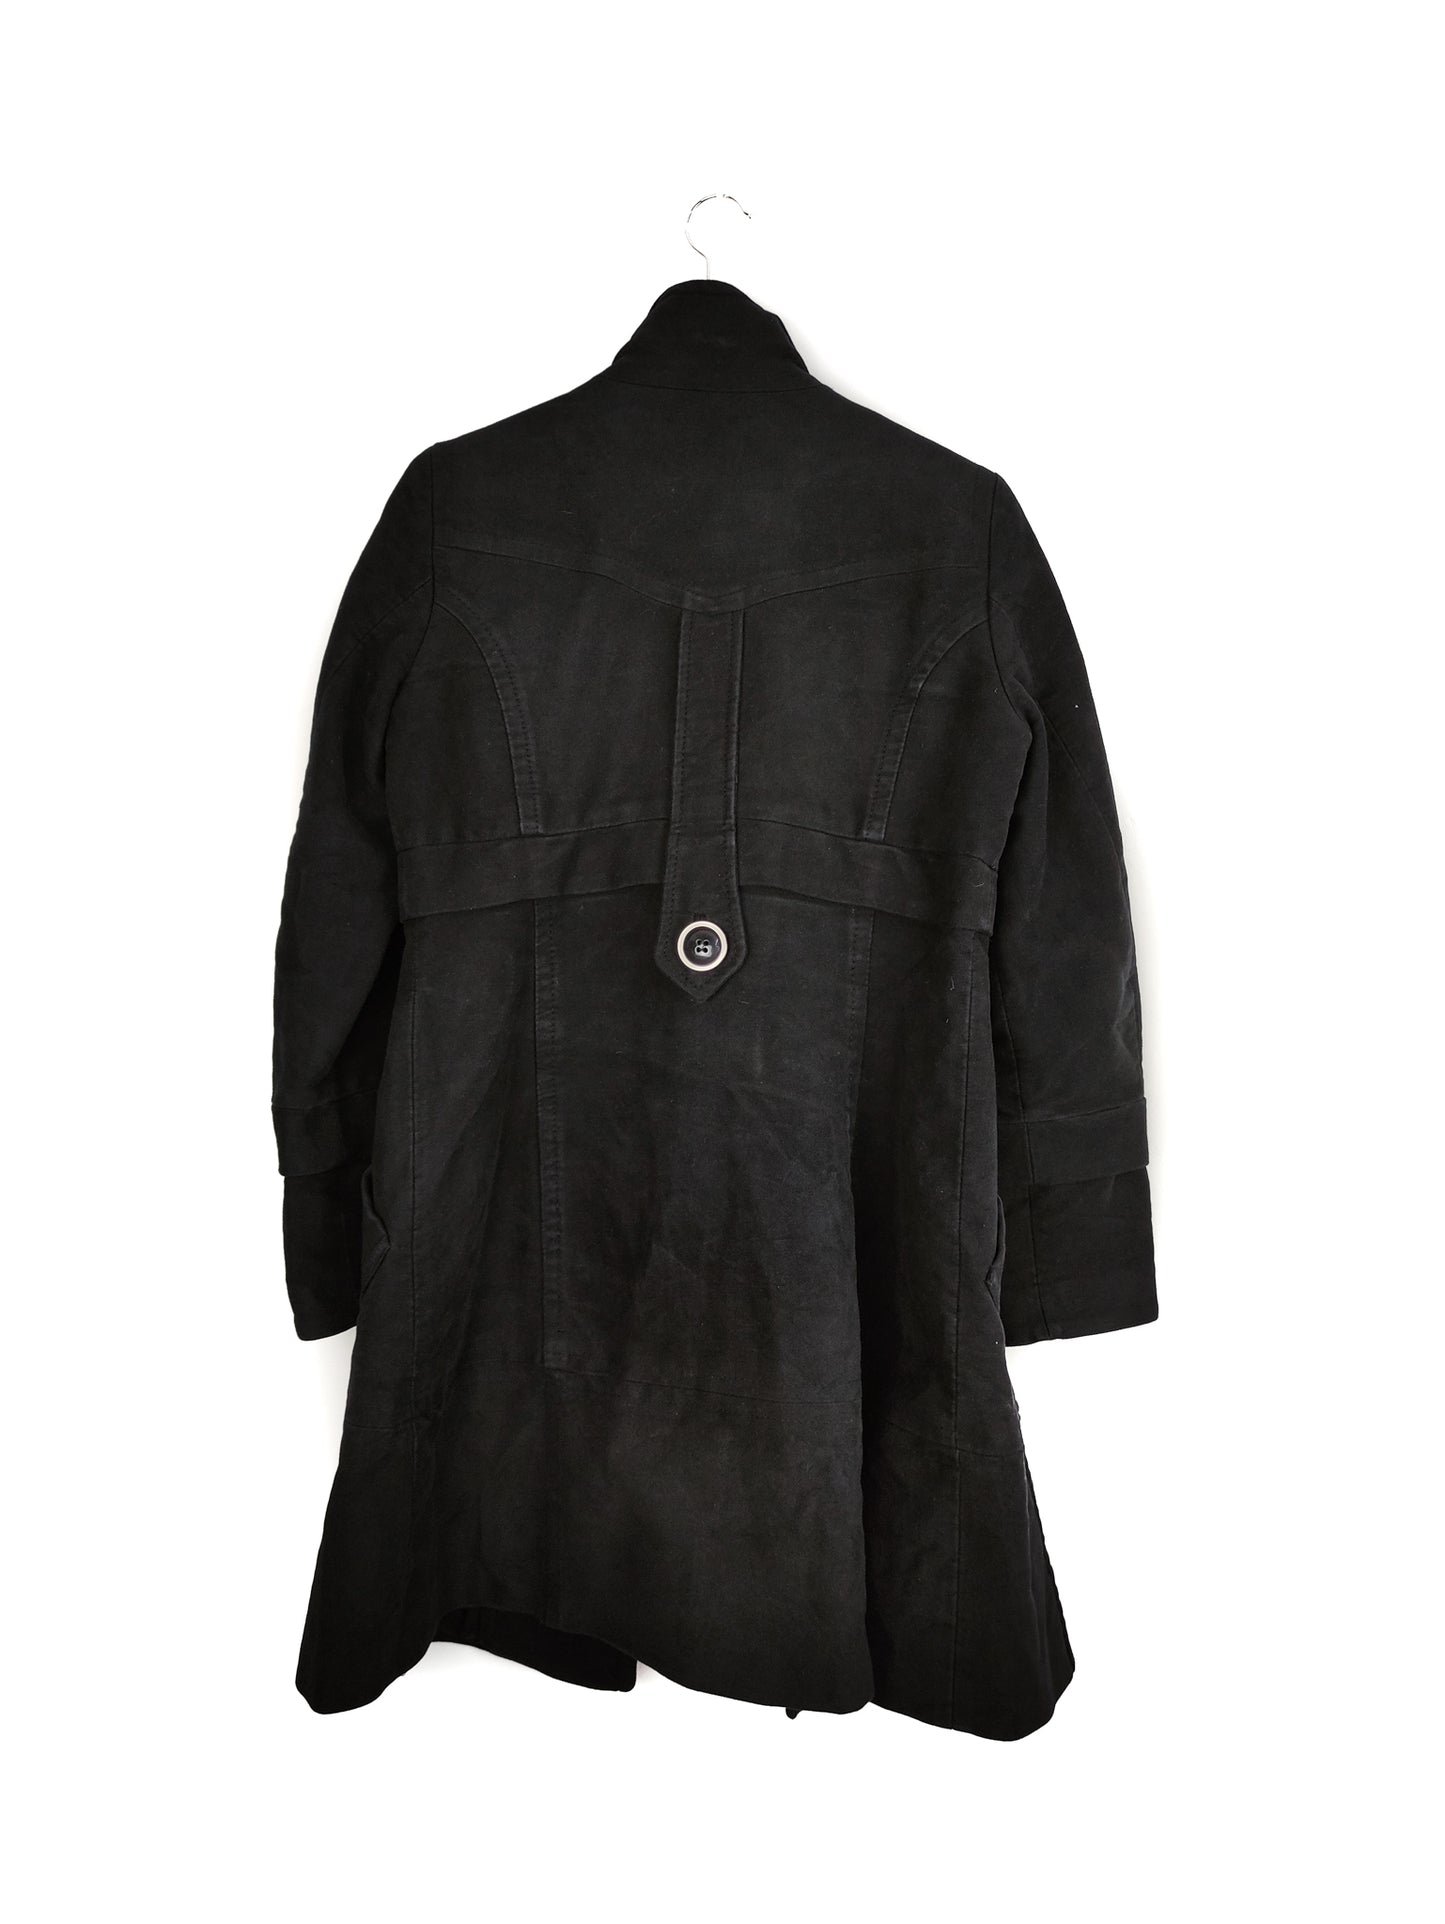 Γυναικείο Παλτό MNG SUIT σε Μαύρο χρώμα (M/L)